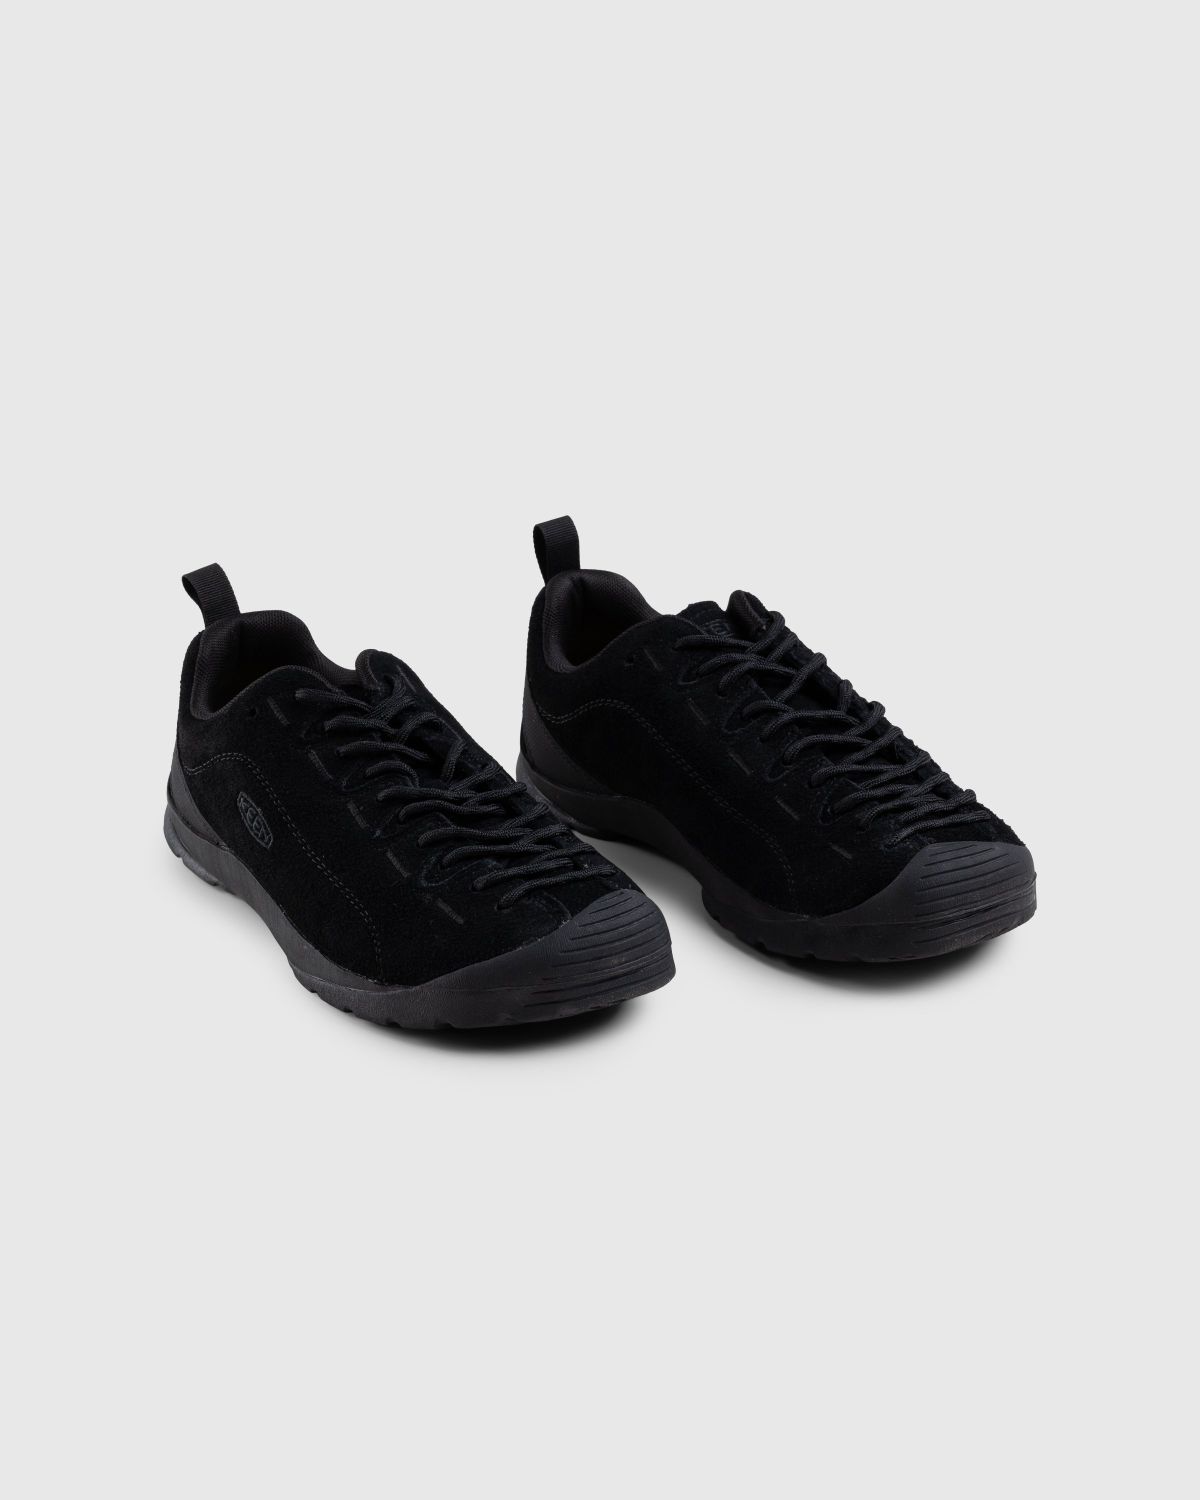 Keen – Jasper Black - Low Top Sneakers - Black - Image 3